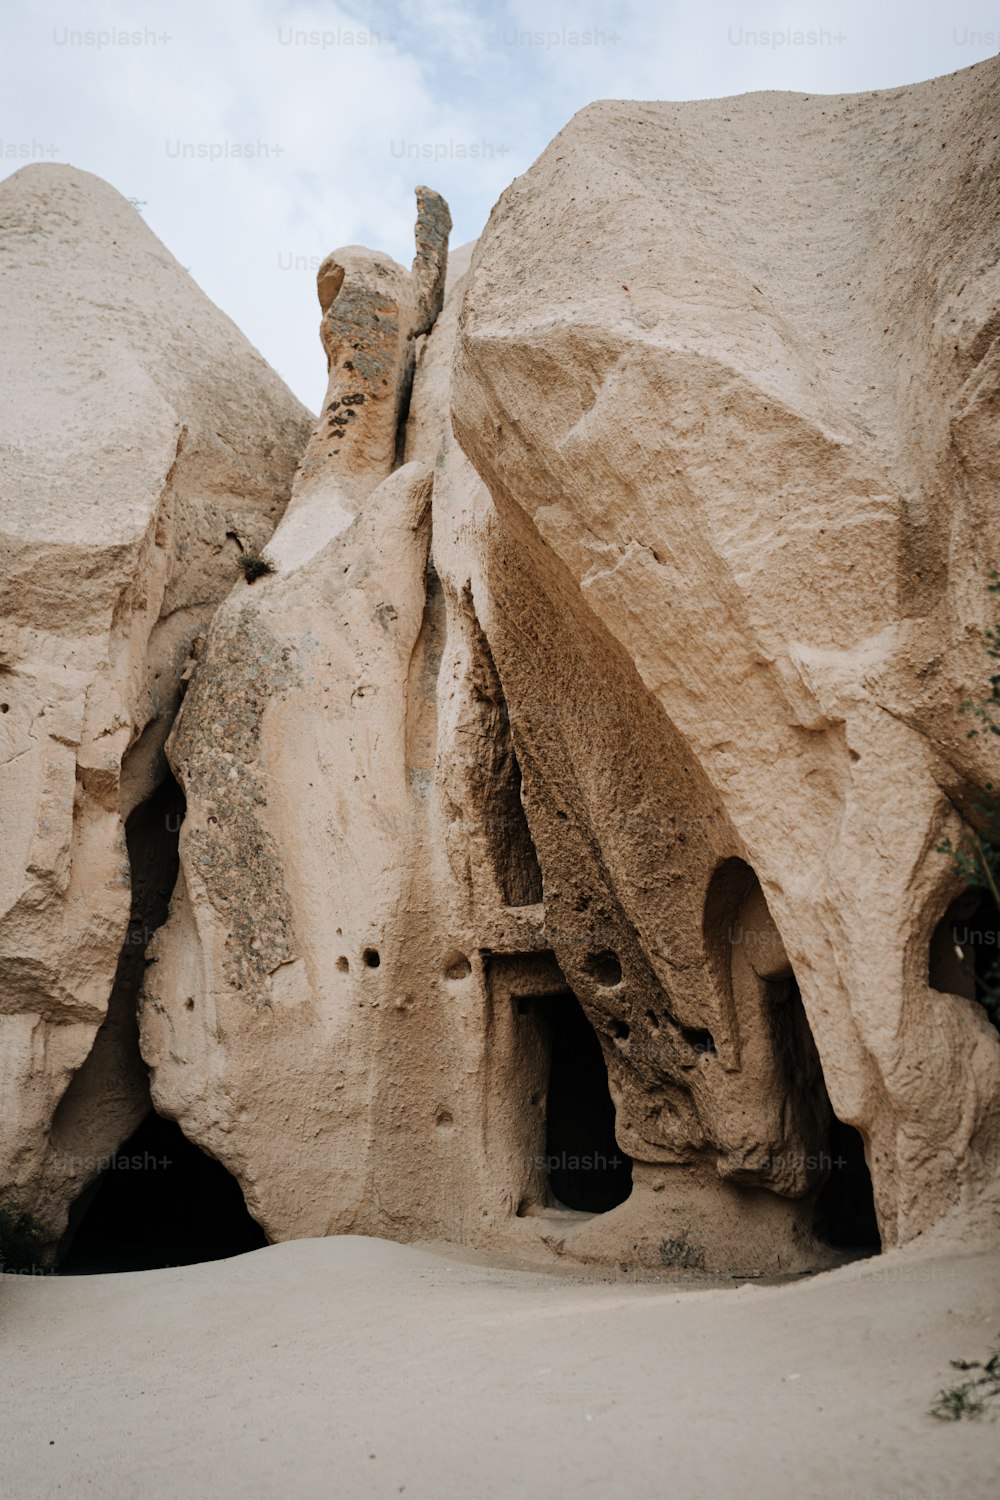 una grande formazione rocciosa con una piccola grotta al suo interno